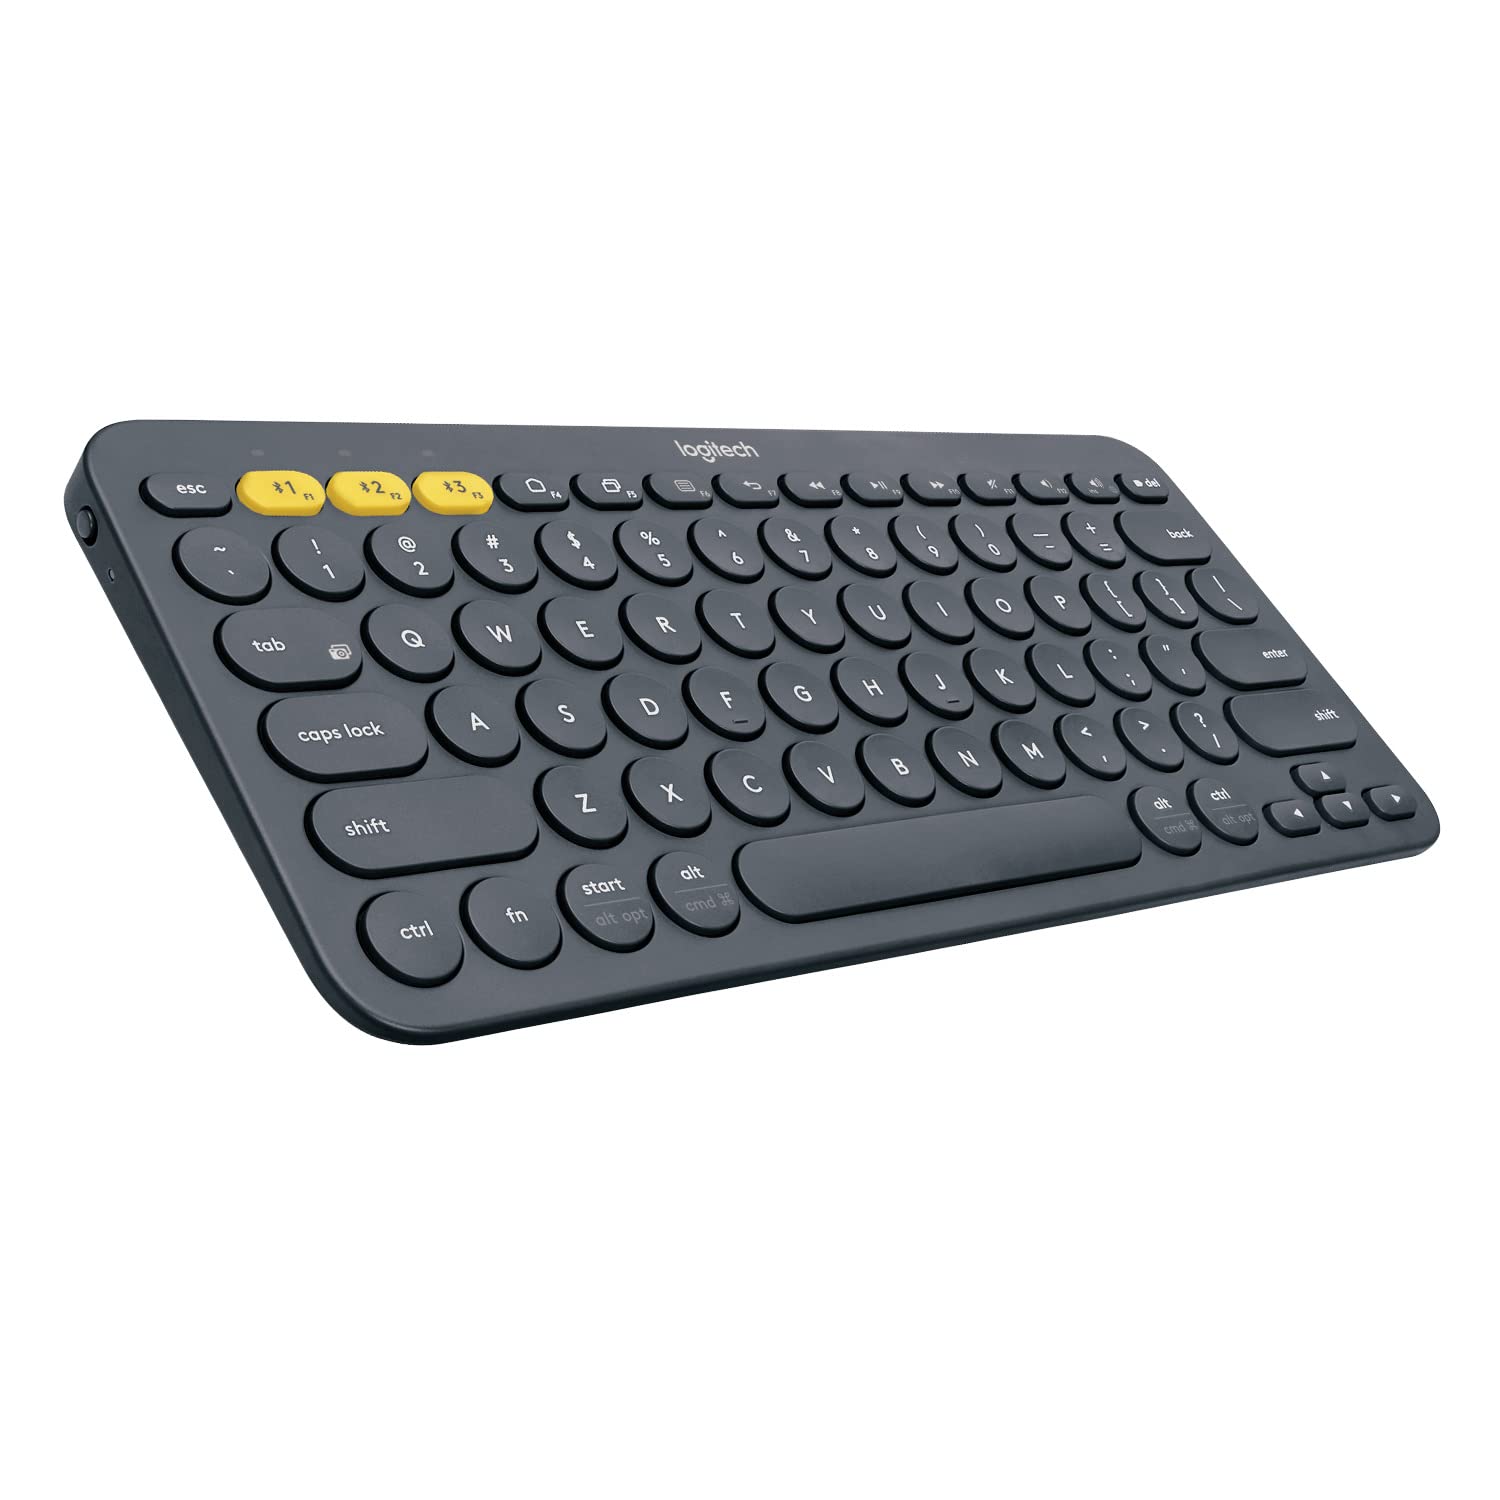 Logitech K380 Multi-Device Bluetooth Keyboard $24 at Amazon